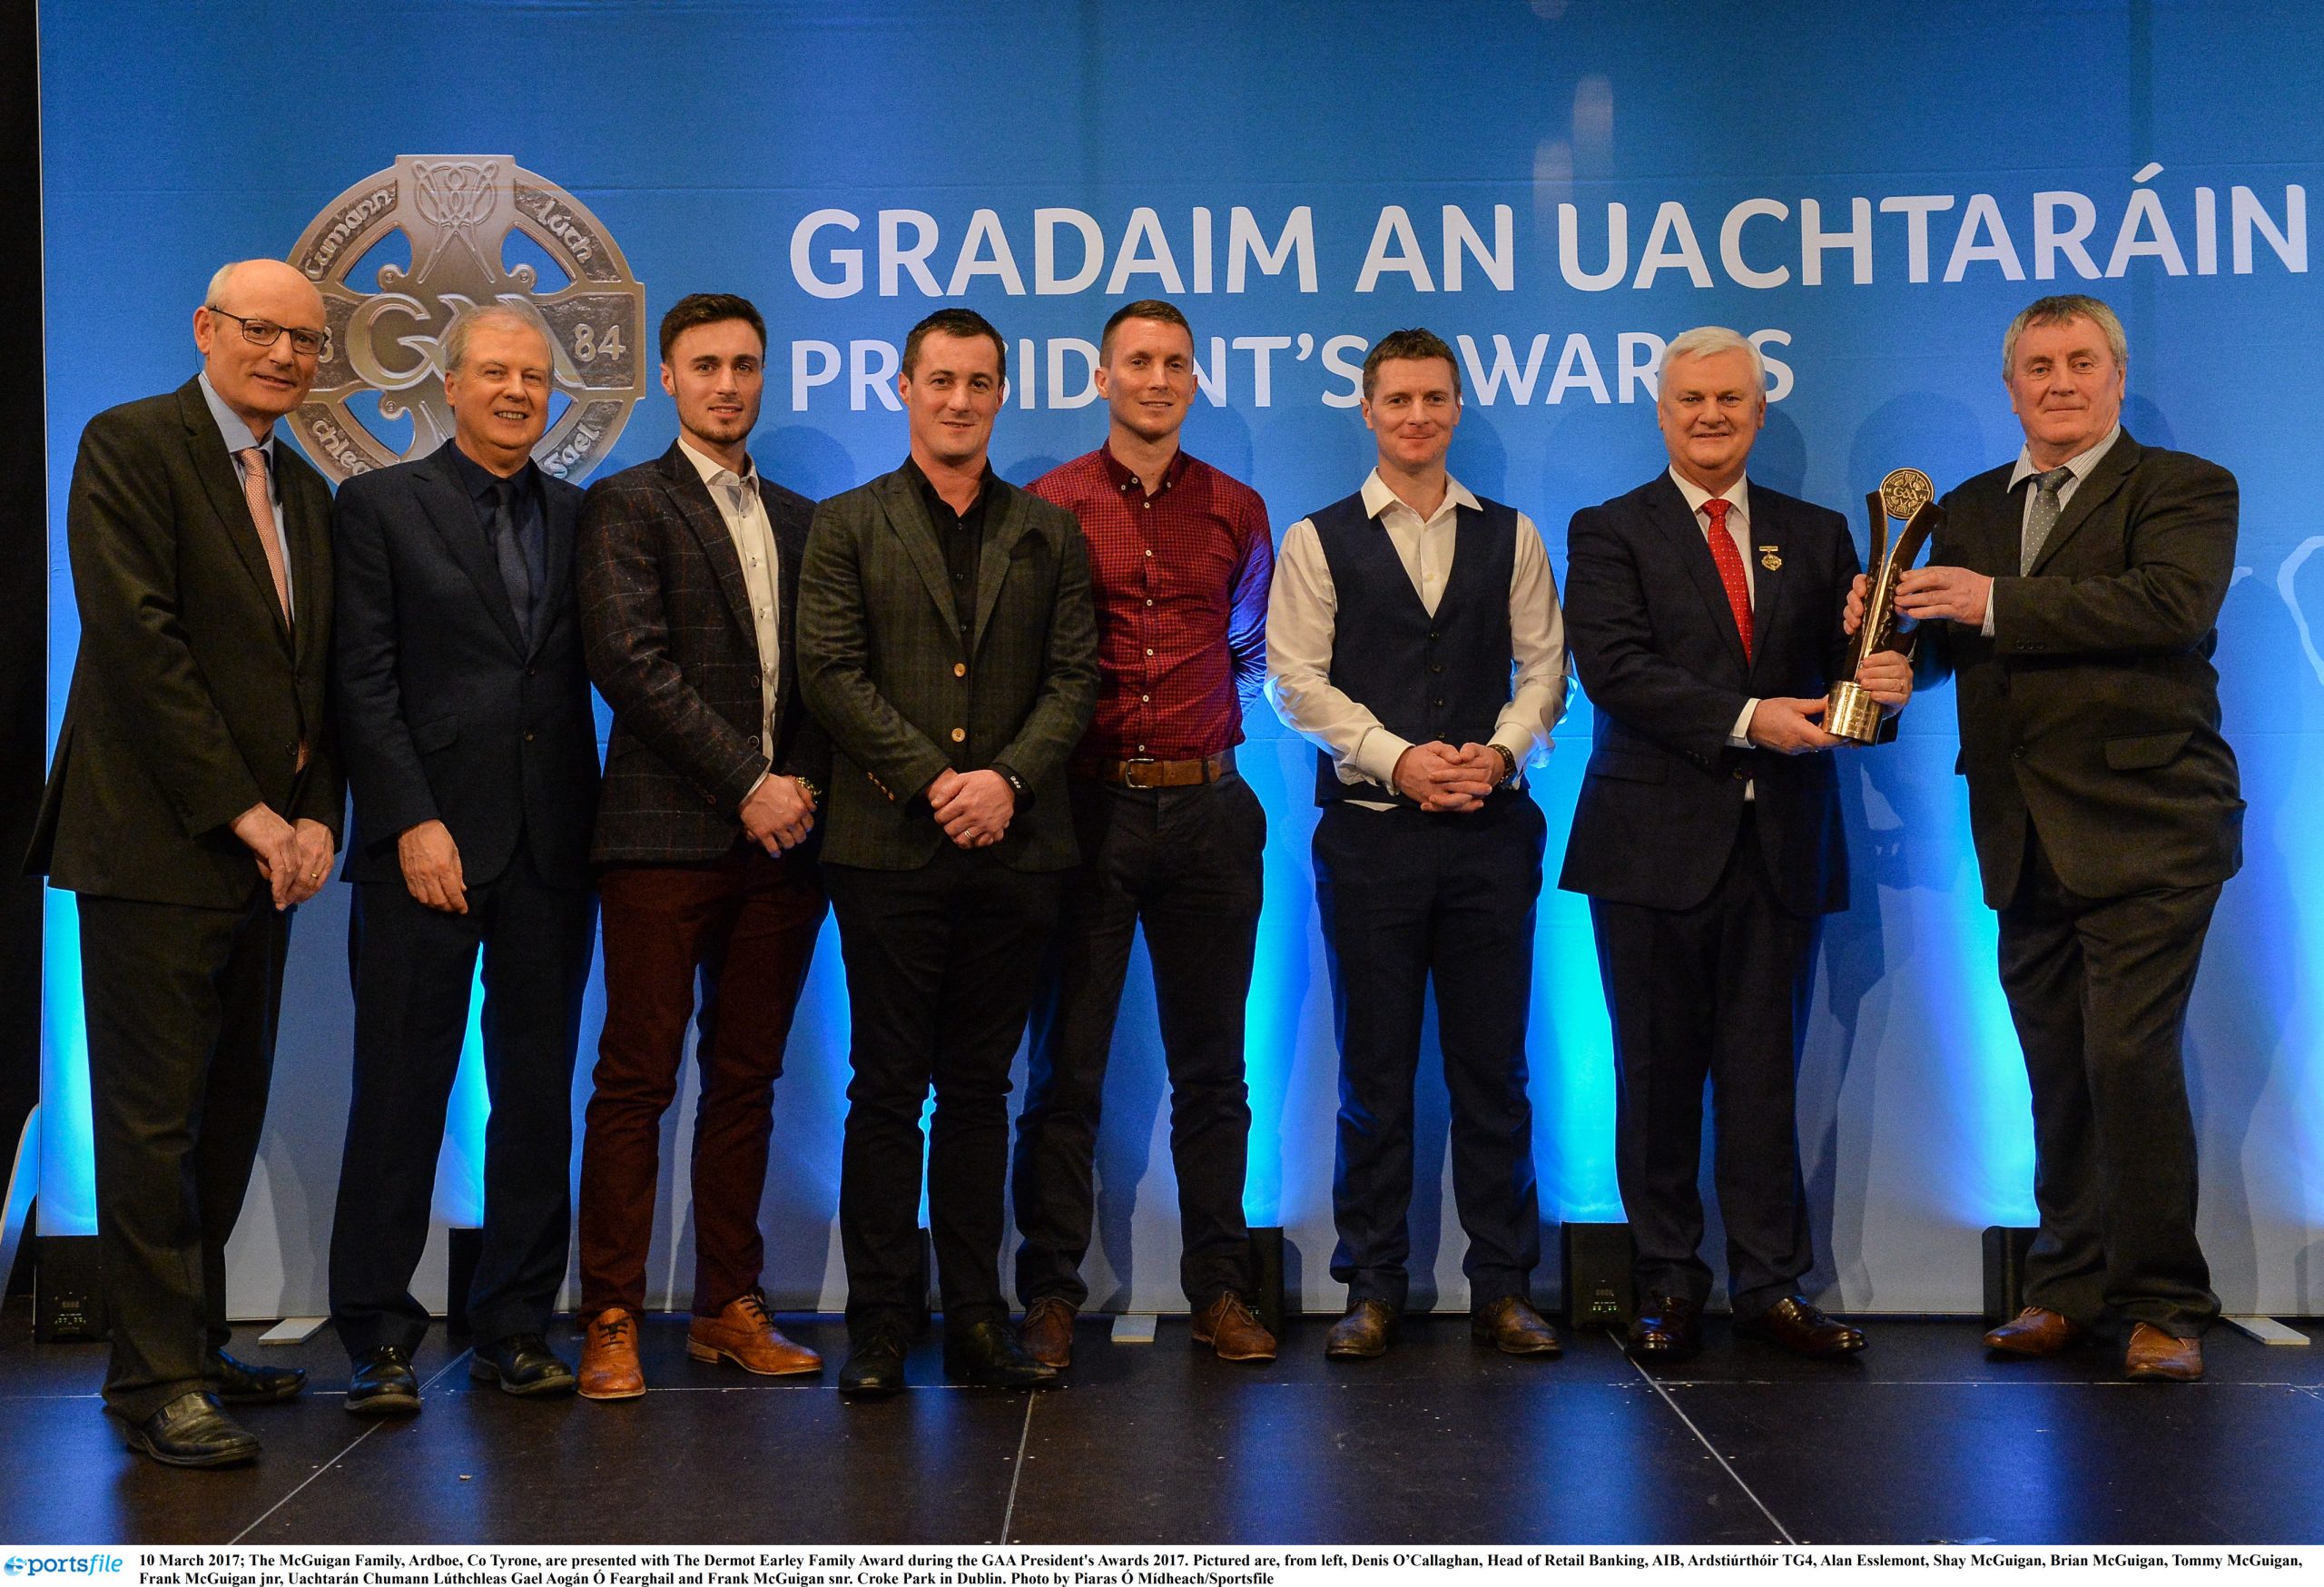 GAA President’s Awards for Ulster Gaels